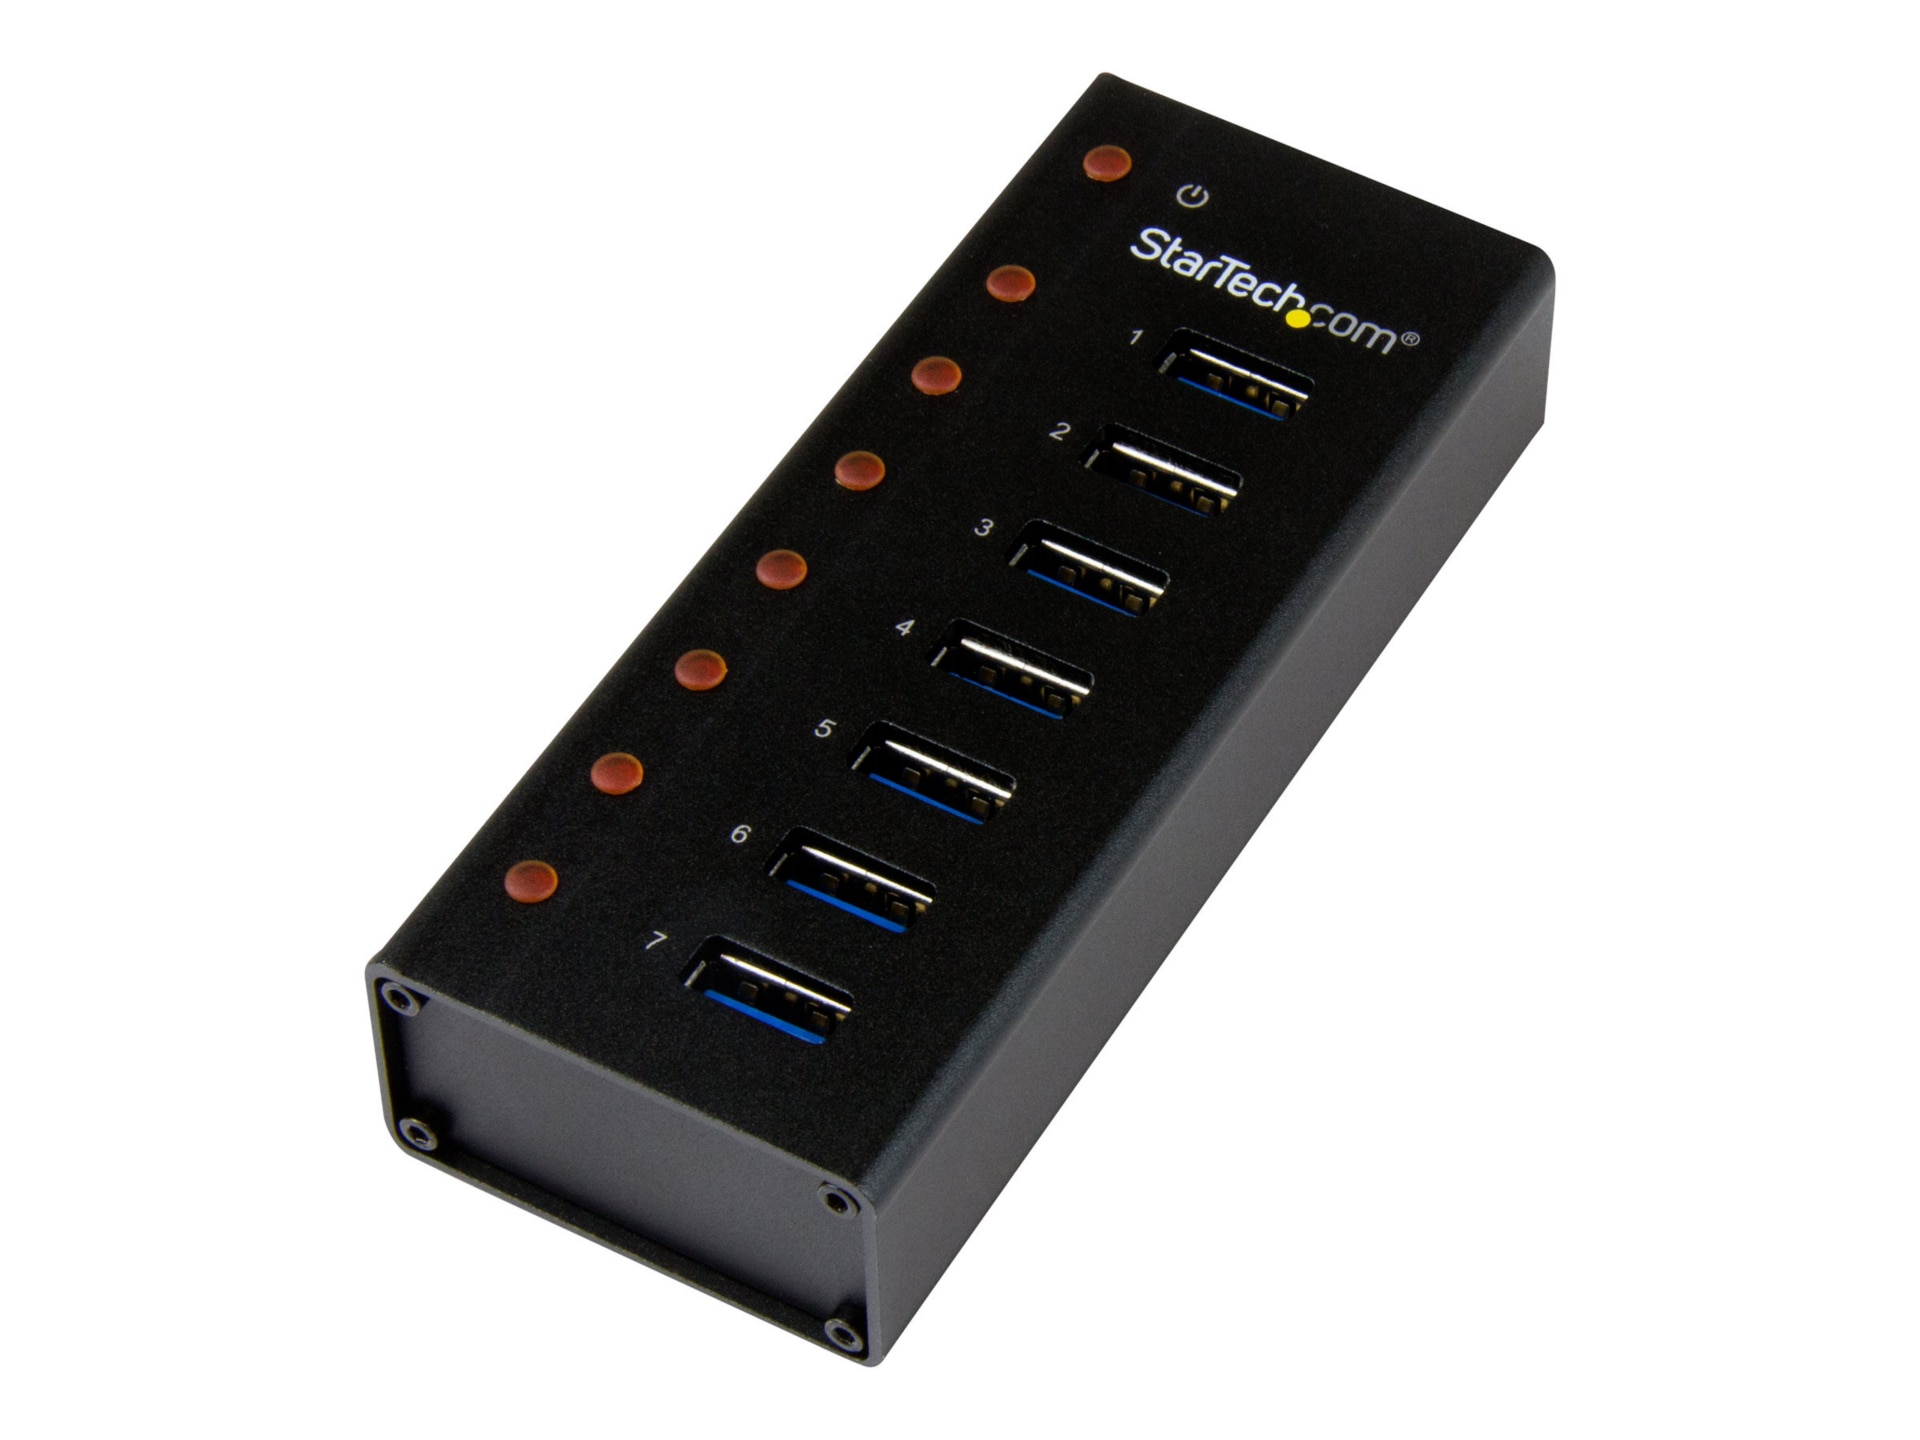 StarTech.com, USB 3.0 USB-Hub, 7 USB Ports, USB A, USB, Netzteil, 172 x 70  x 23mm